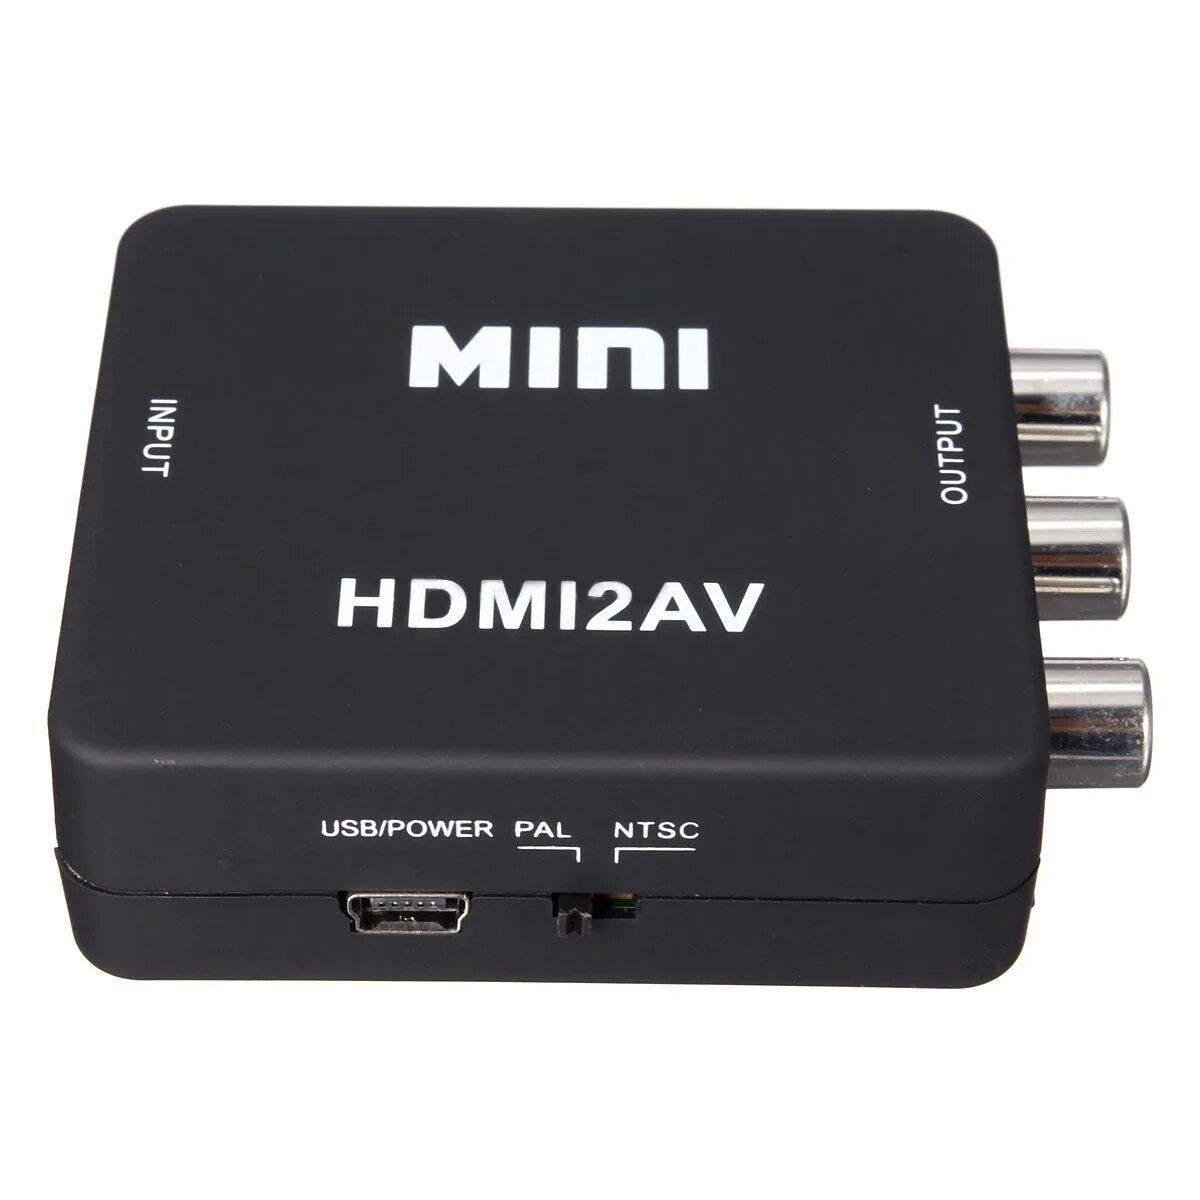 Конвертер для тв. Адаптер Mini HDMI/av 1080p Converter to 3 RCA. Адаптер Mini av 2 HDMI Converter 3 RCA 1080p. Адаптер h122 Mini hdmi2av 1080p Converter to 3 RCA, черный. Адаптер h123 Mini hdmi2av 1080p Converter to 3 RCA (White).